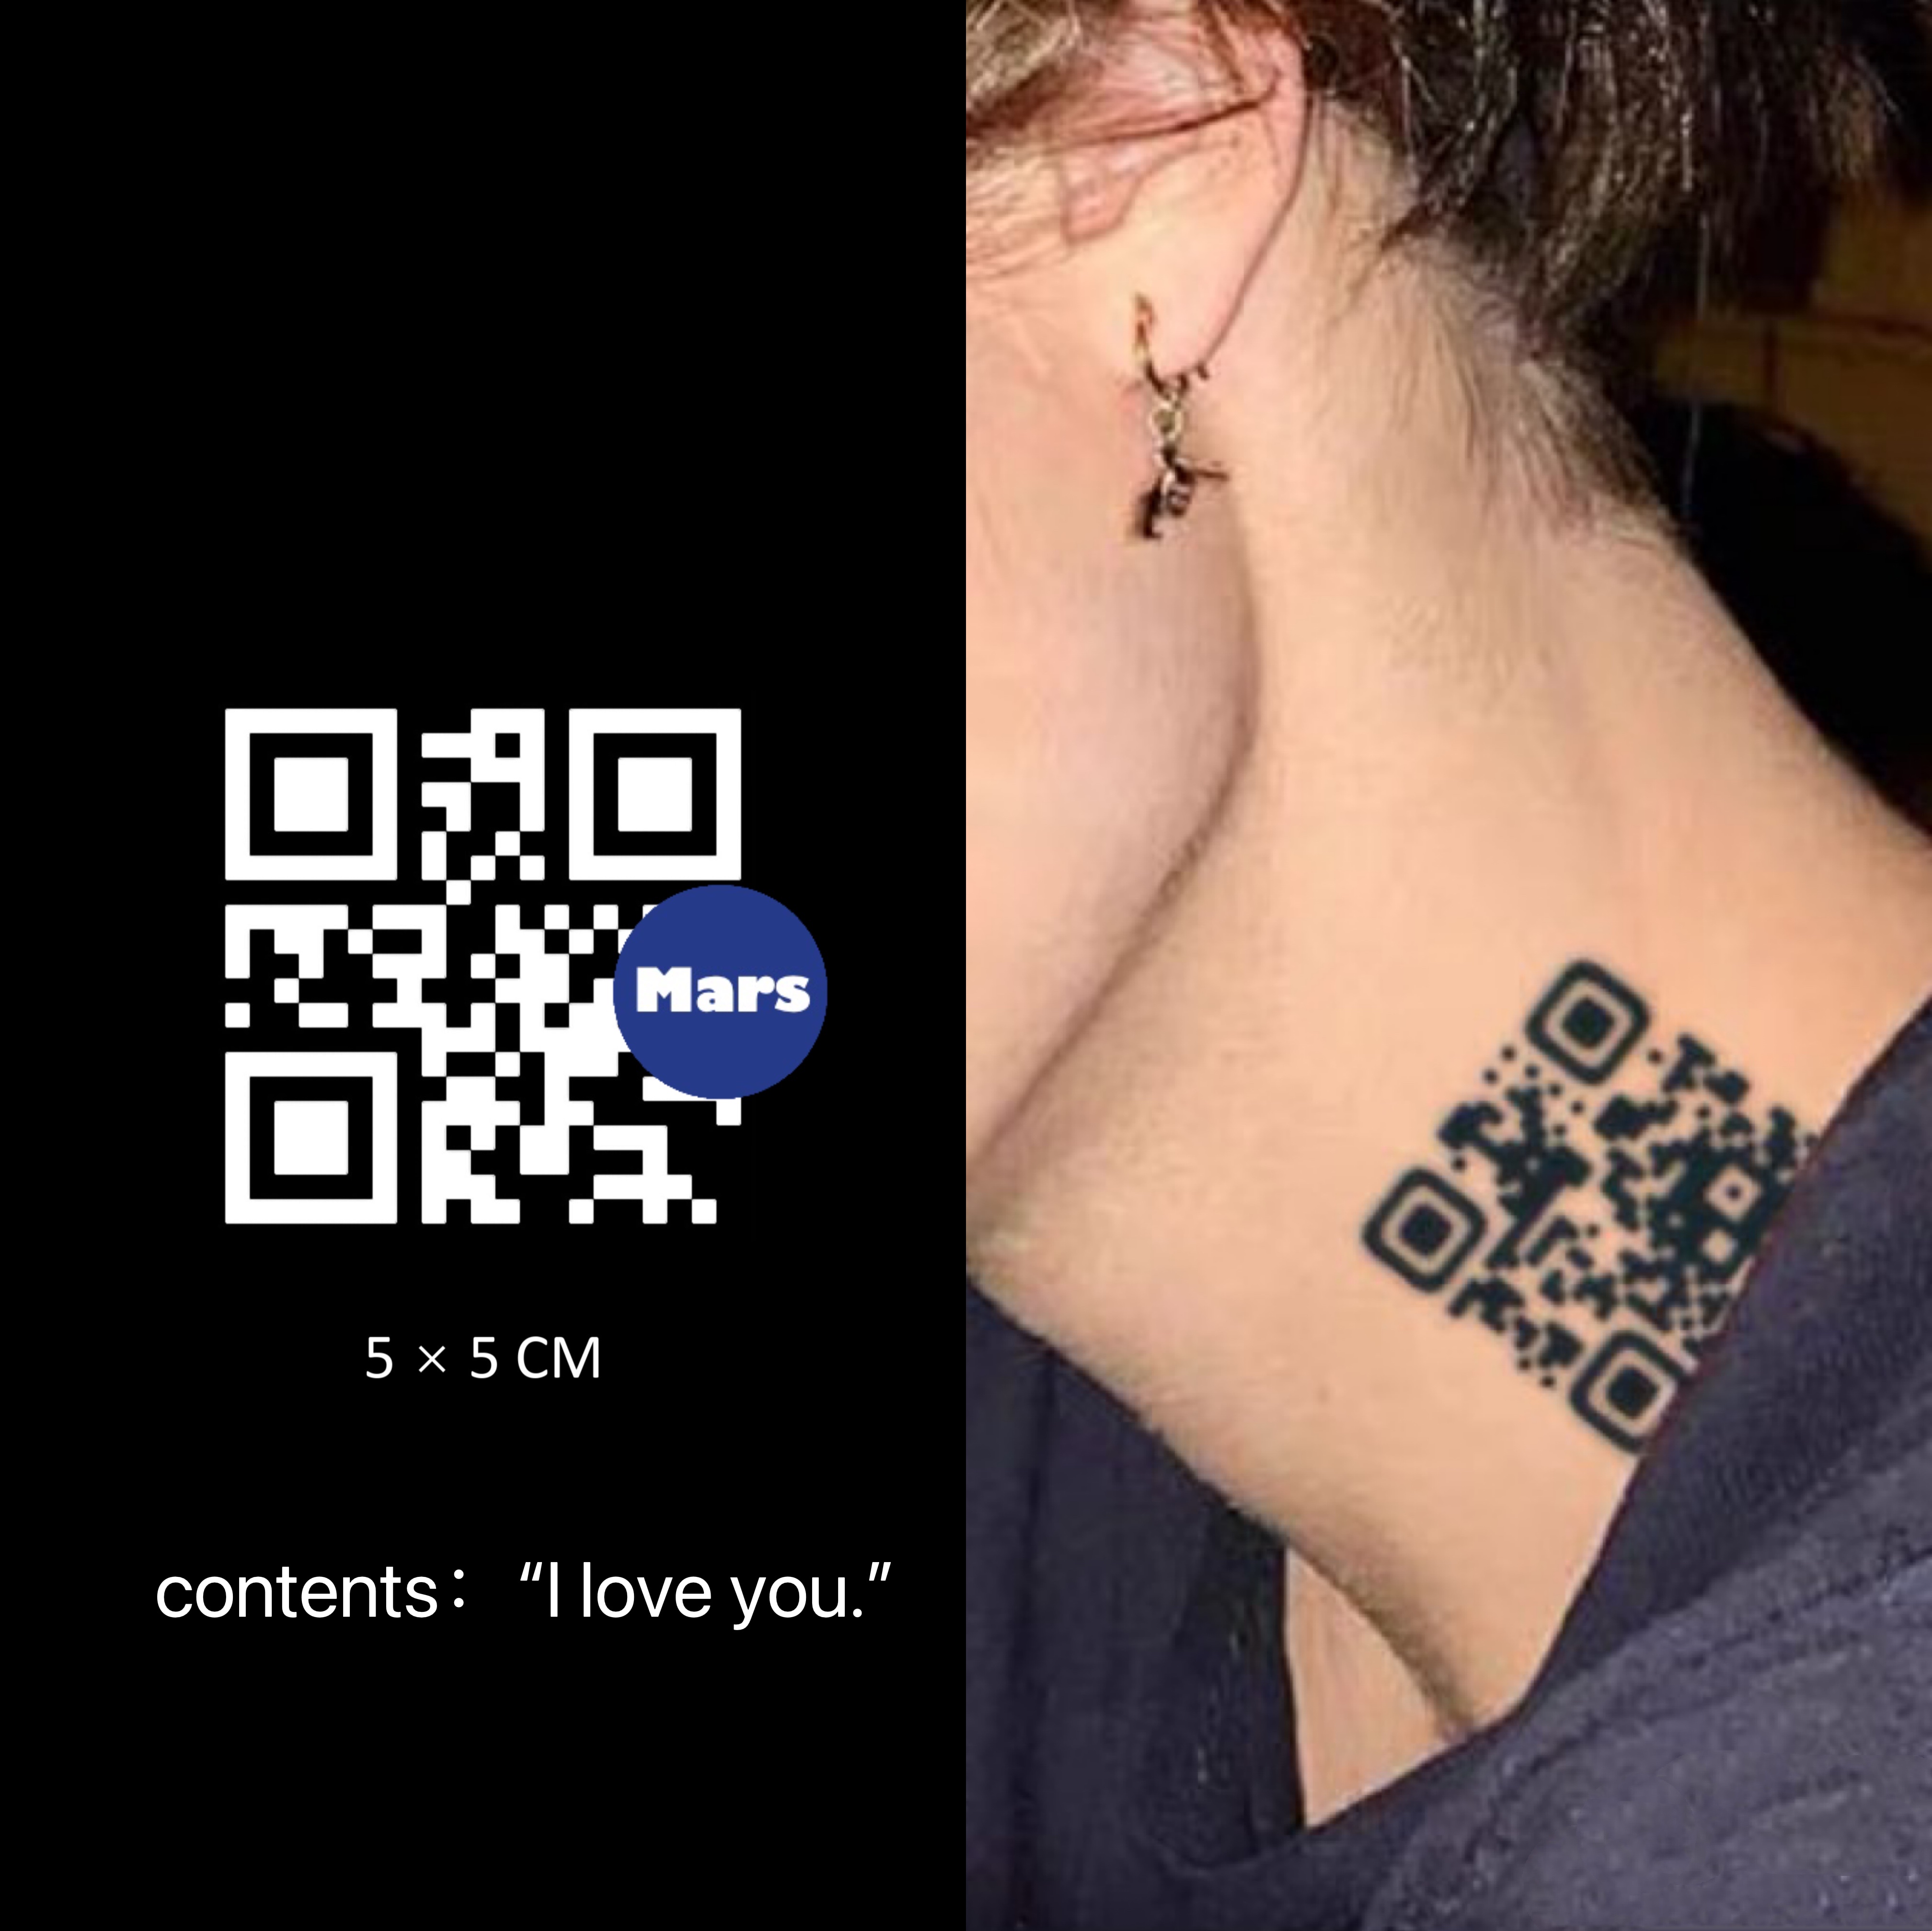 How to Design a Unique QR Code Tattoo | Picsart